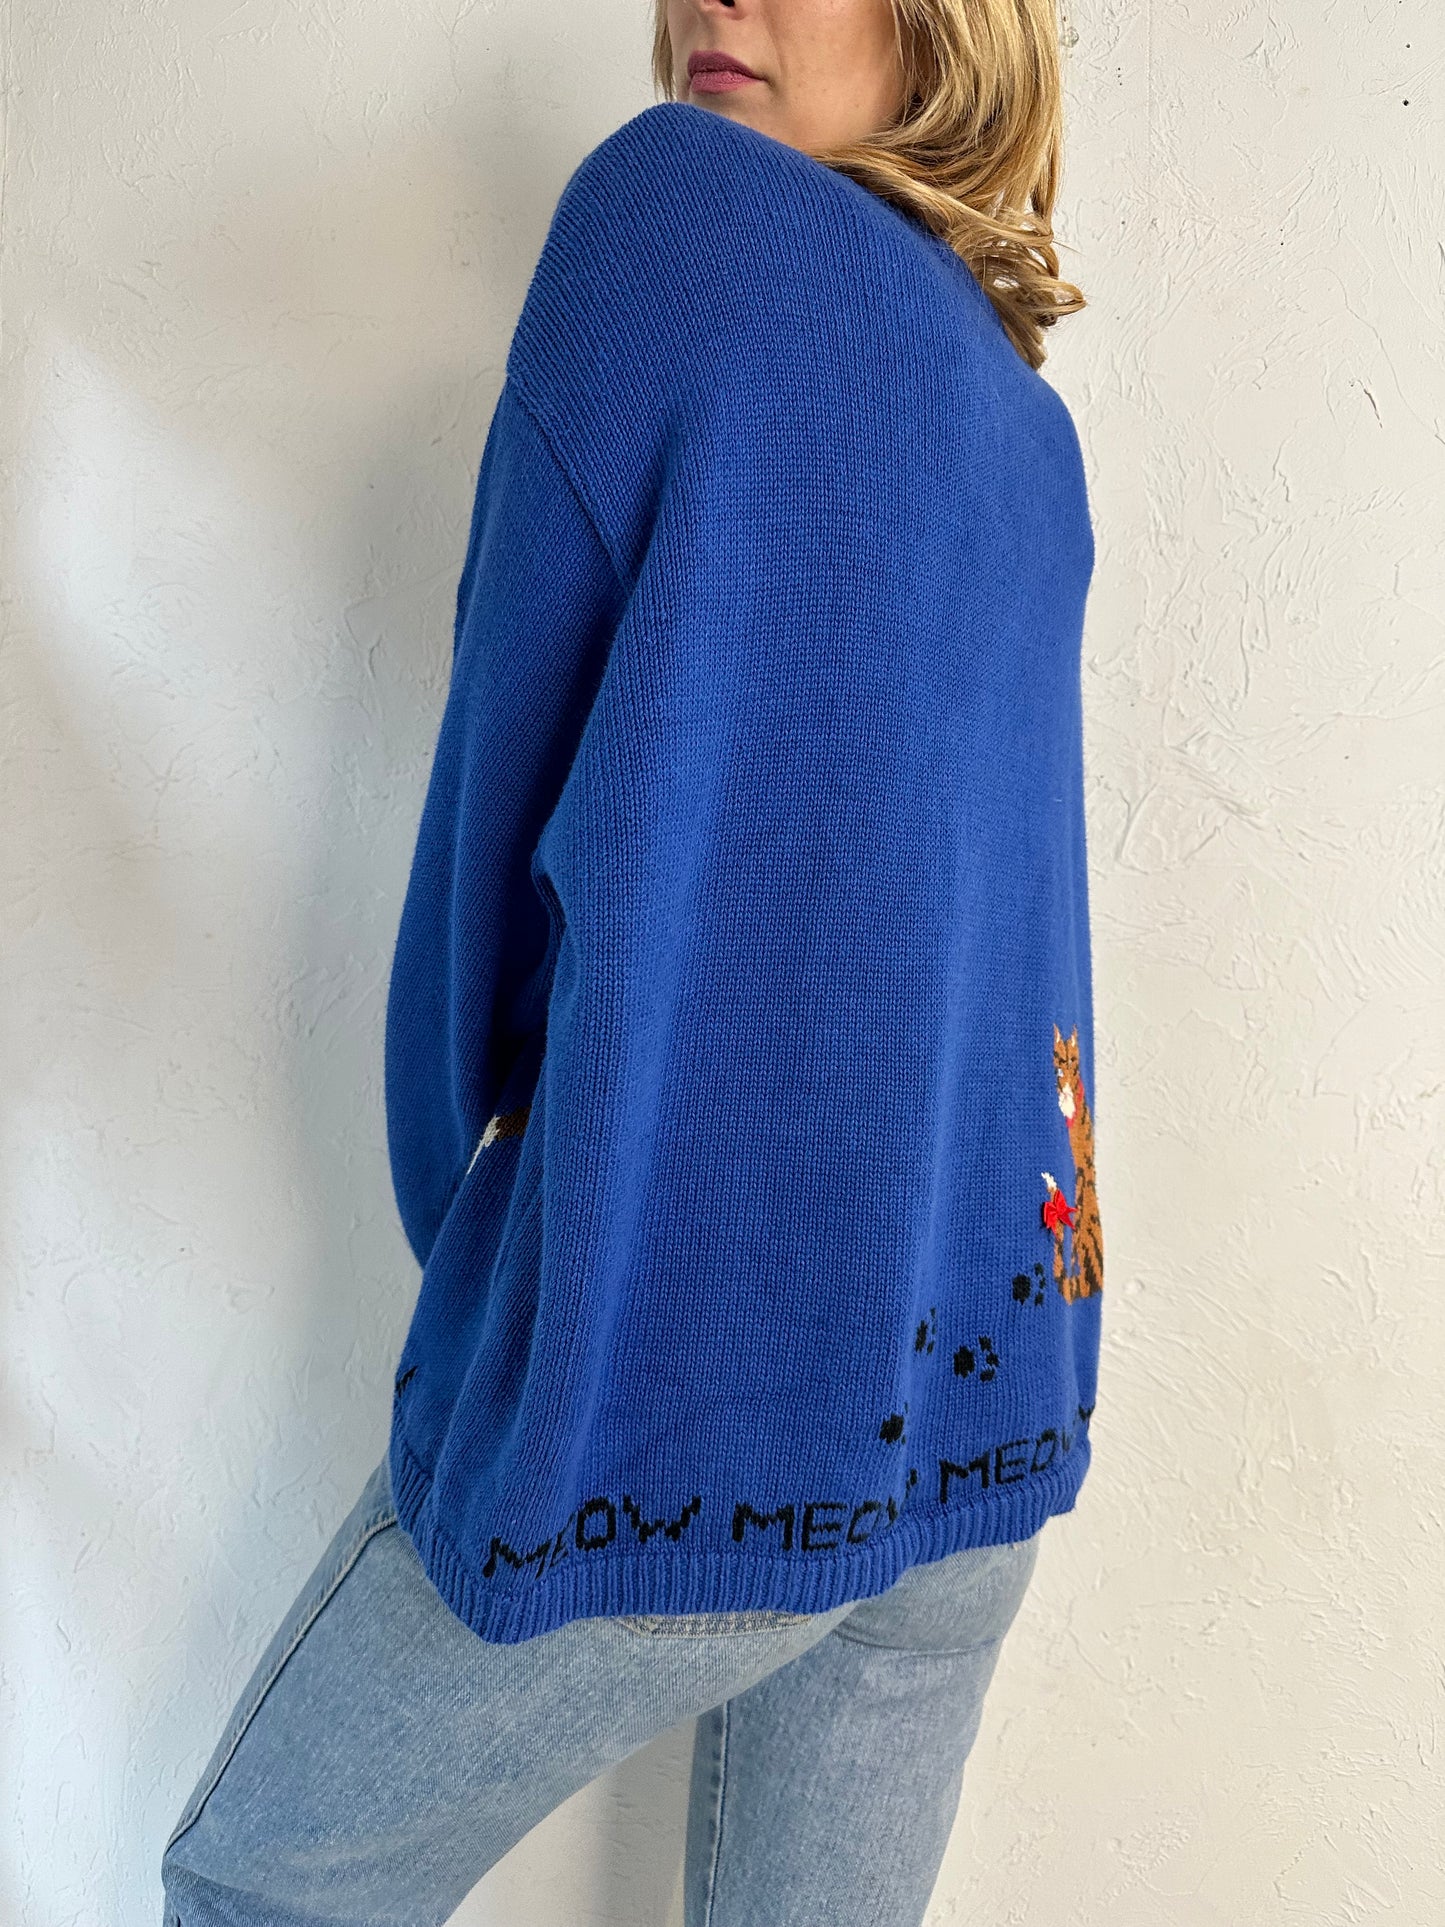 90s 'Marisa Christina' Cotton Ramie Knit Cat Cardigan Sweater / Medium